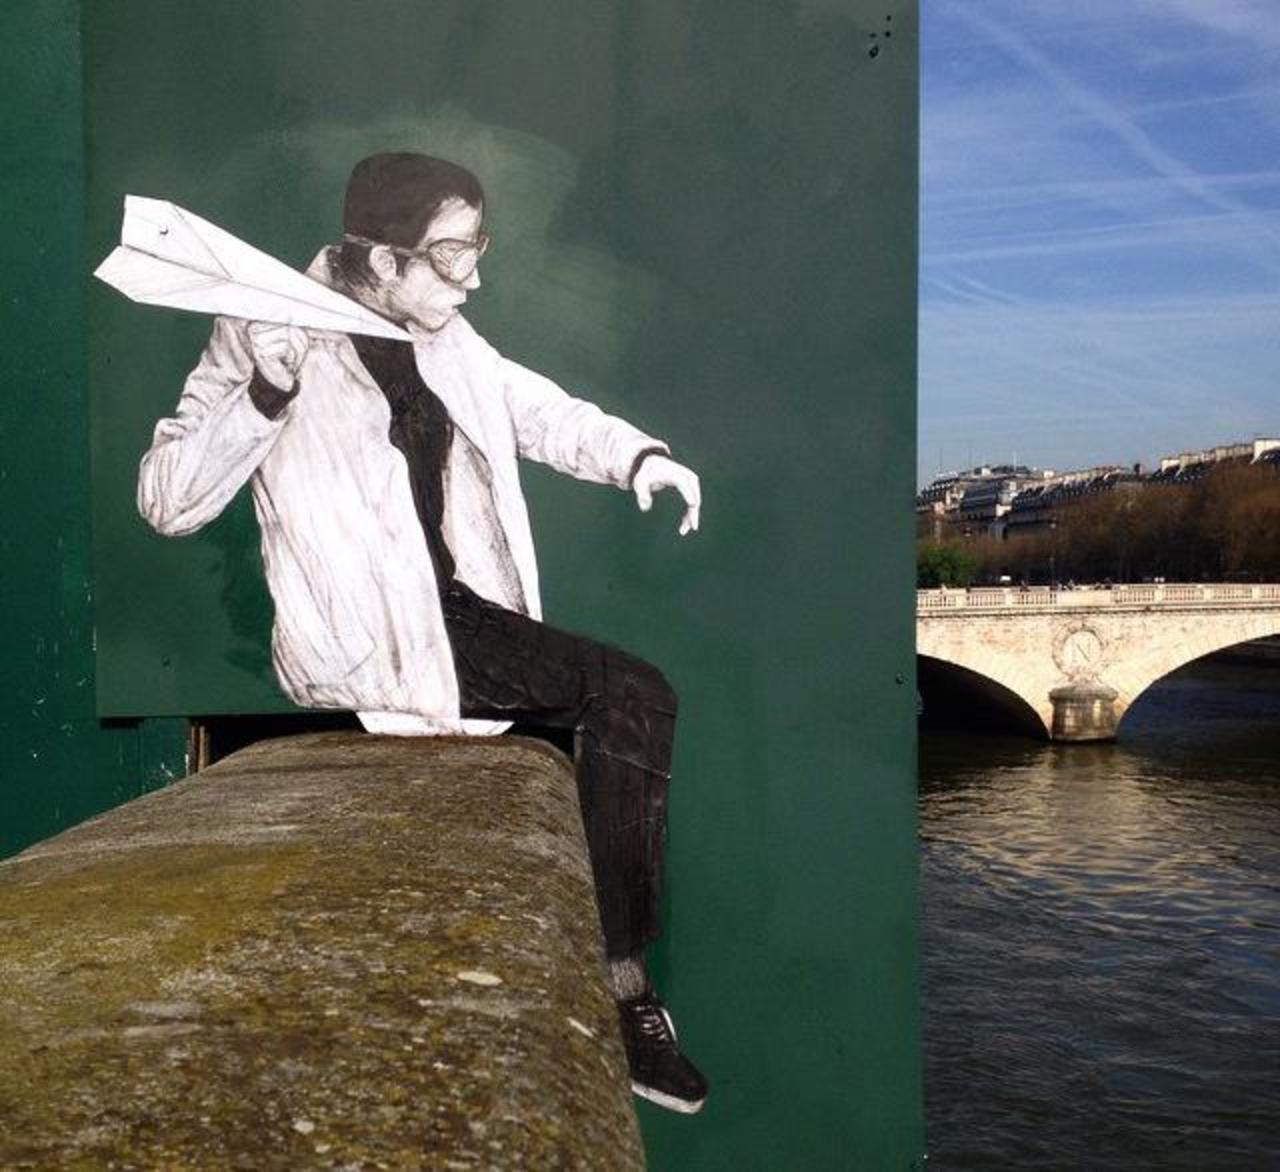 New Street Art by Levalet in Paris

#art #graffiti #arte #streetart http://t.co/cTyMzukEkE